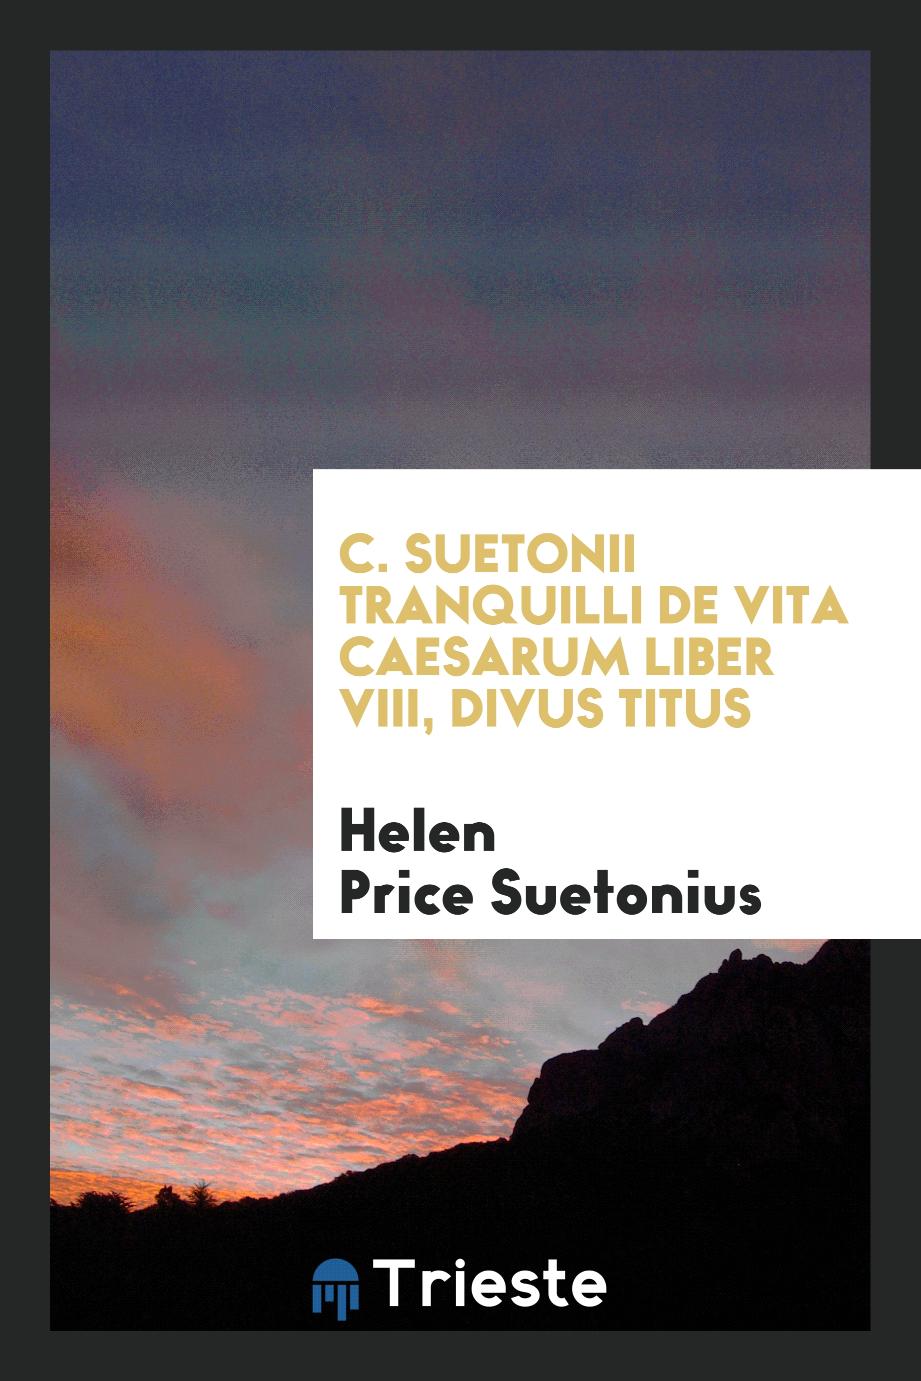 C. Suetonii Tranquilli De Vita Caesarum Liber VIII, Divus Titus